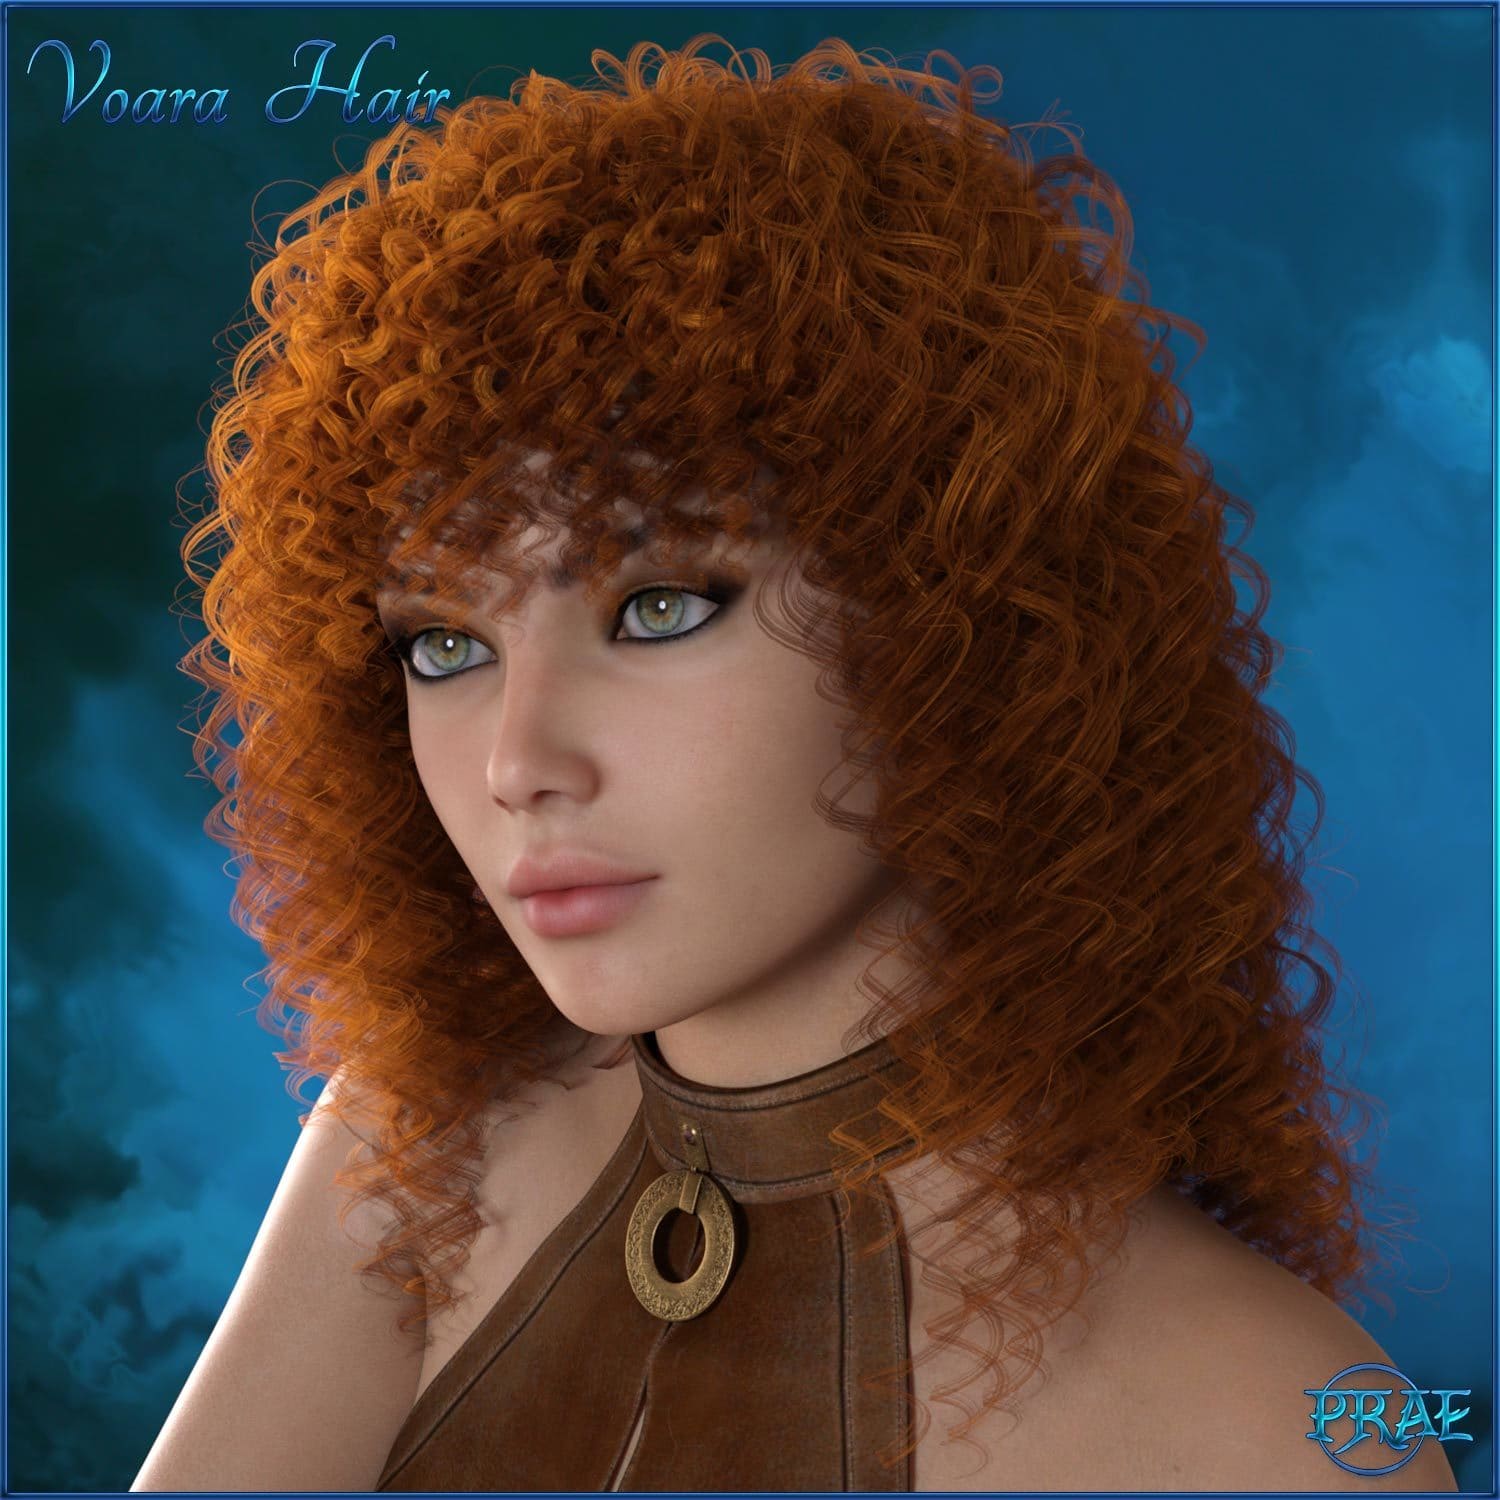 Prae-Voara Hair For G3/G8 Daz_DAZ3D下载站